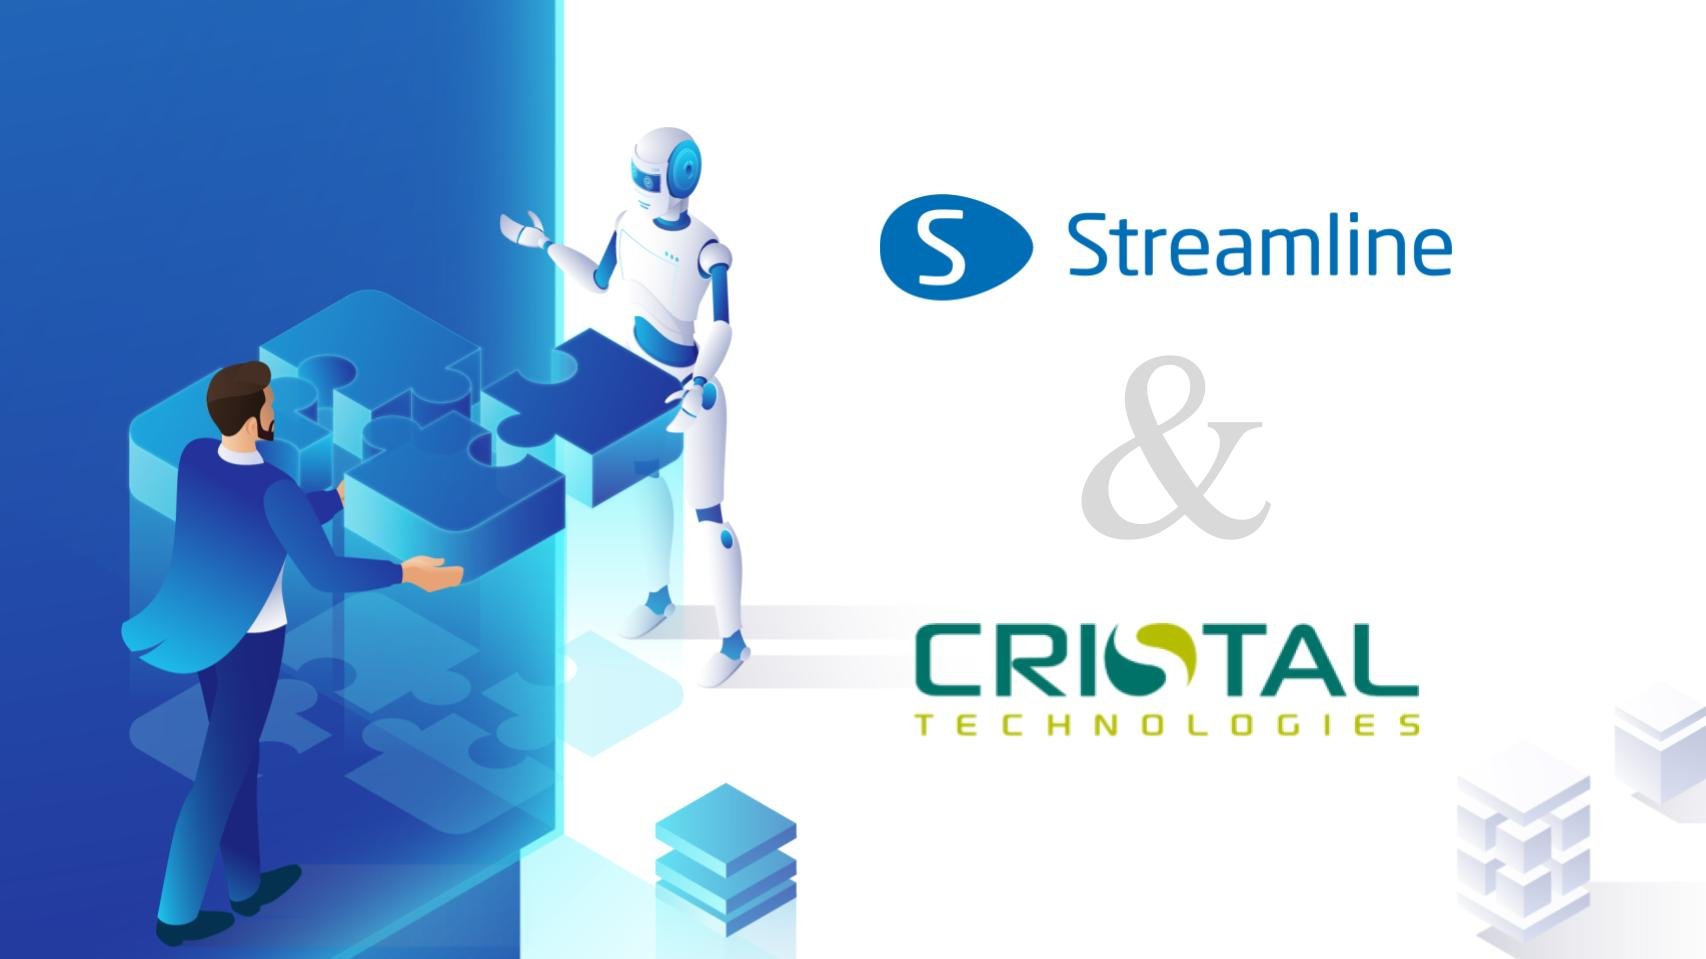 GMDH Streamline và Cristal Technologies đã công bố hình thức đối tác chiến lược